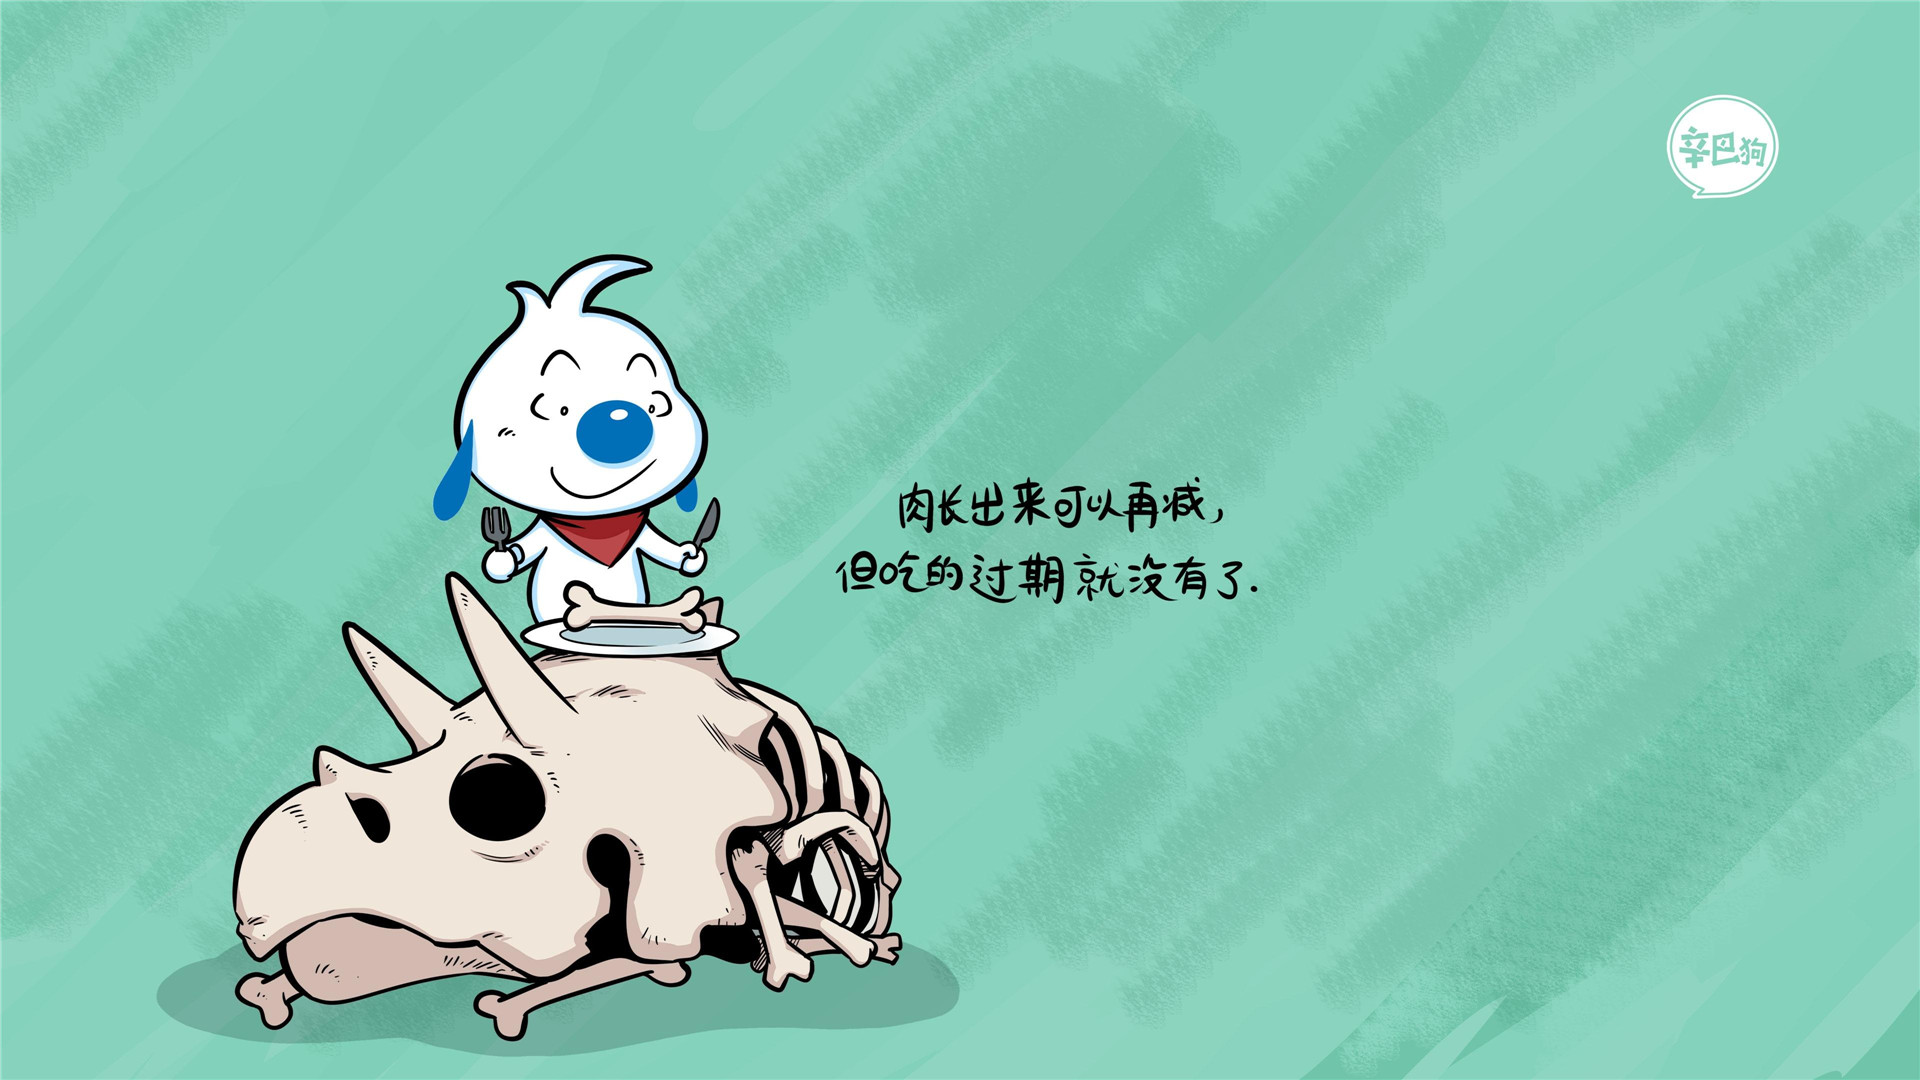 可爱搞笑搞怪的卡通动物辛巴狗神经语录带文字高清插画图片